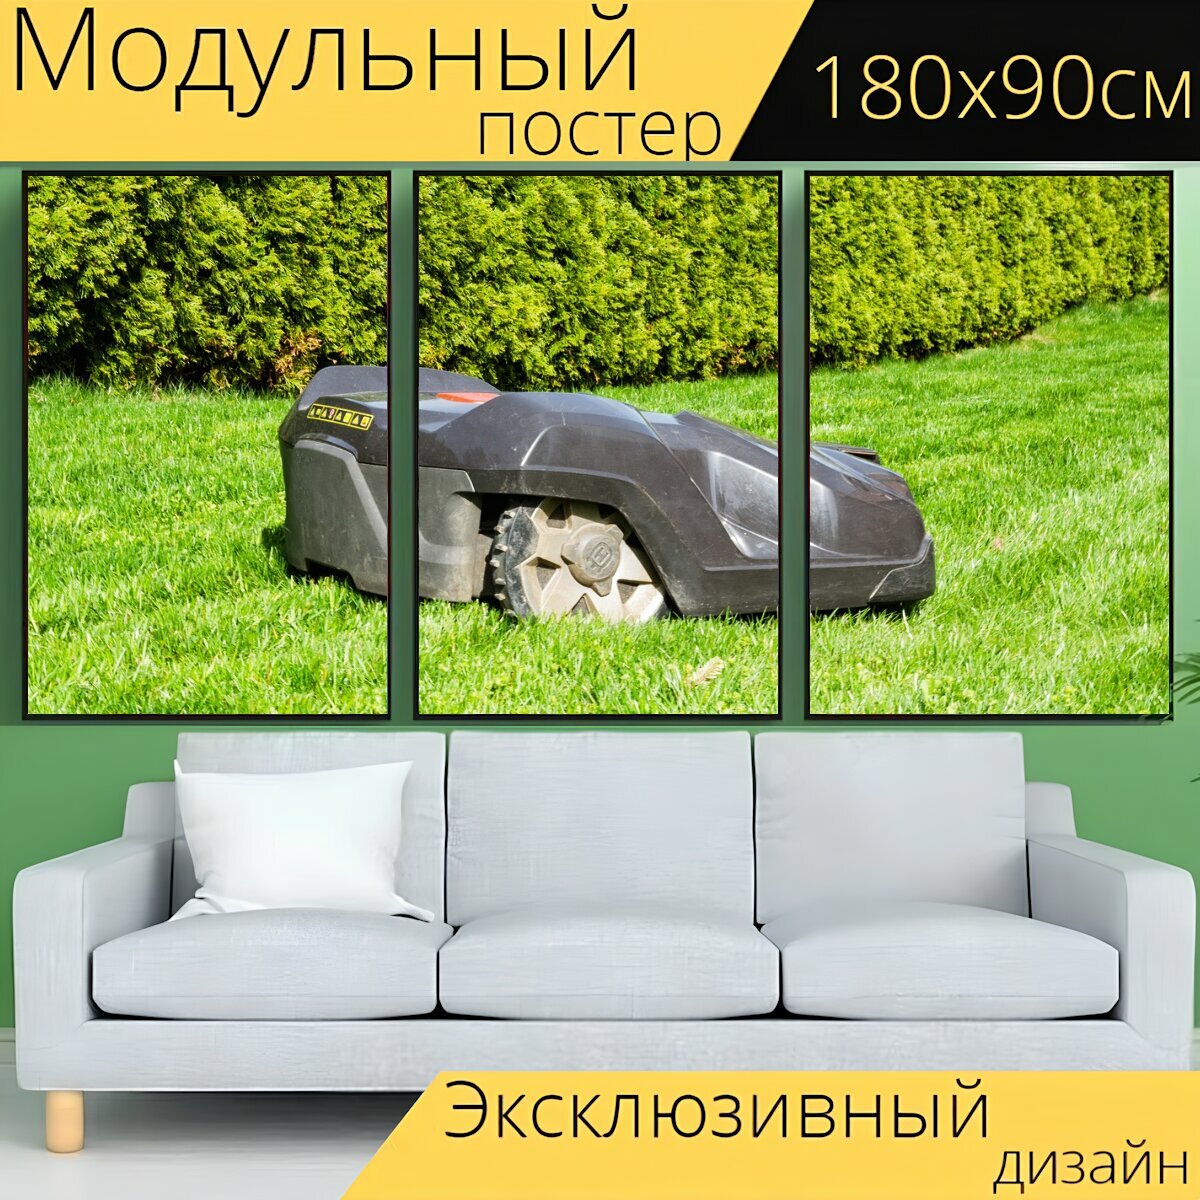 Модульный постер "Трава, лужайка, летом" 180 x 90 см. для интерьера